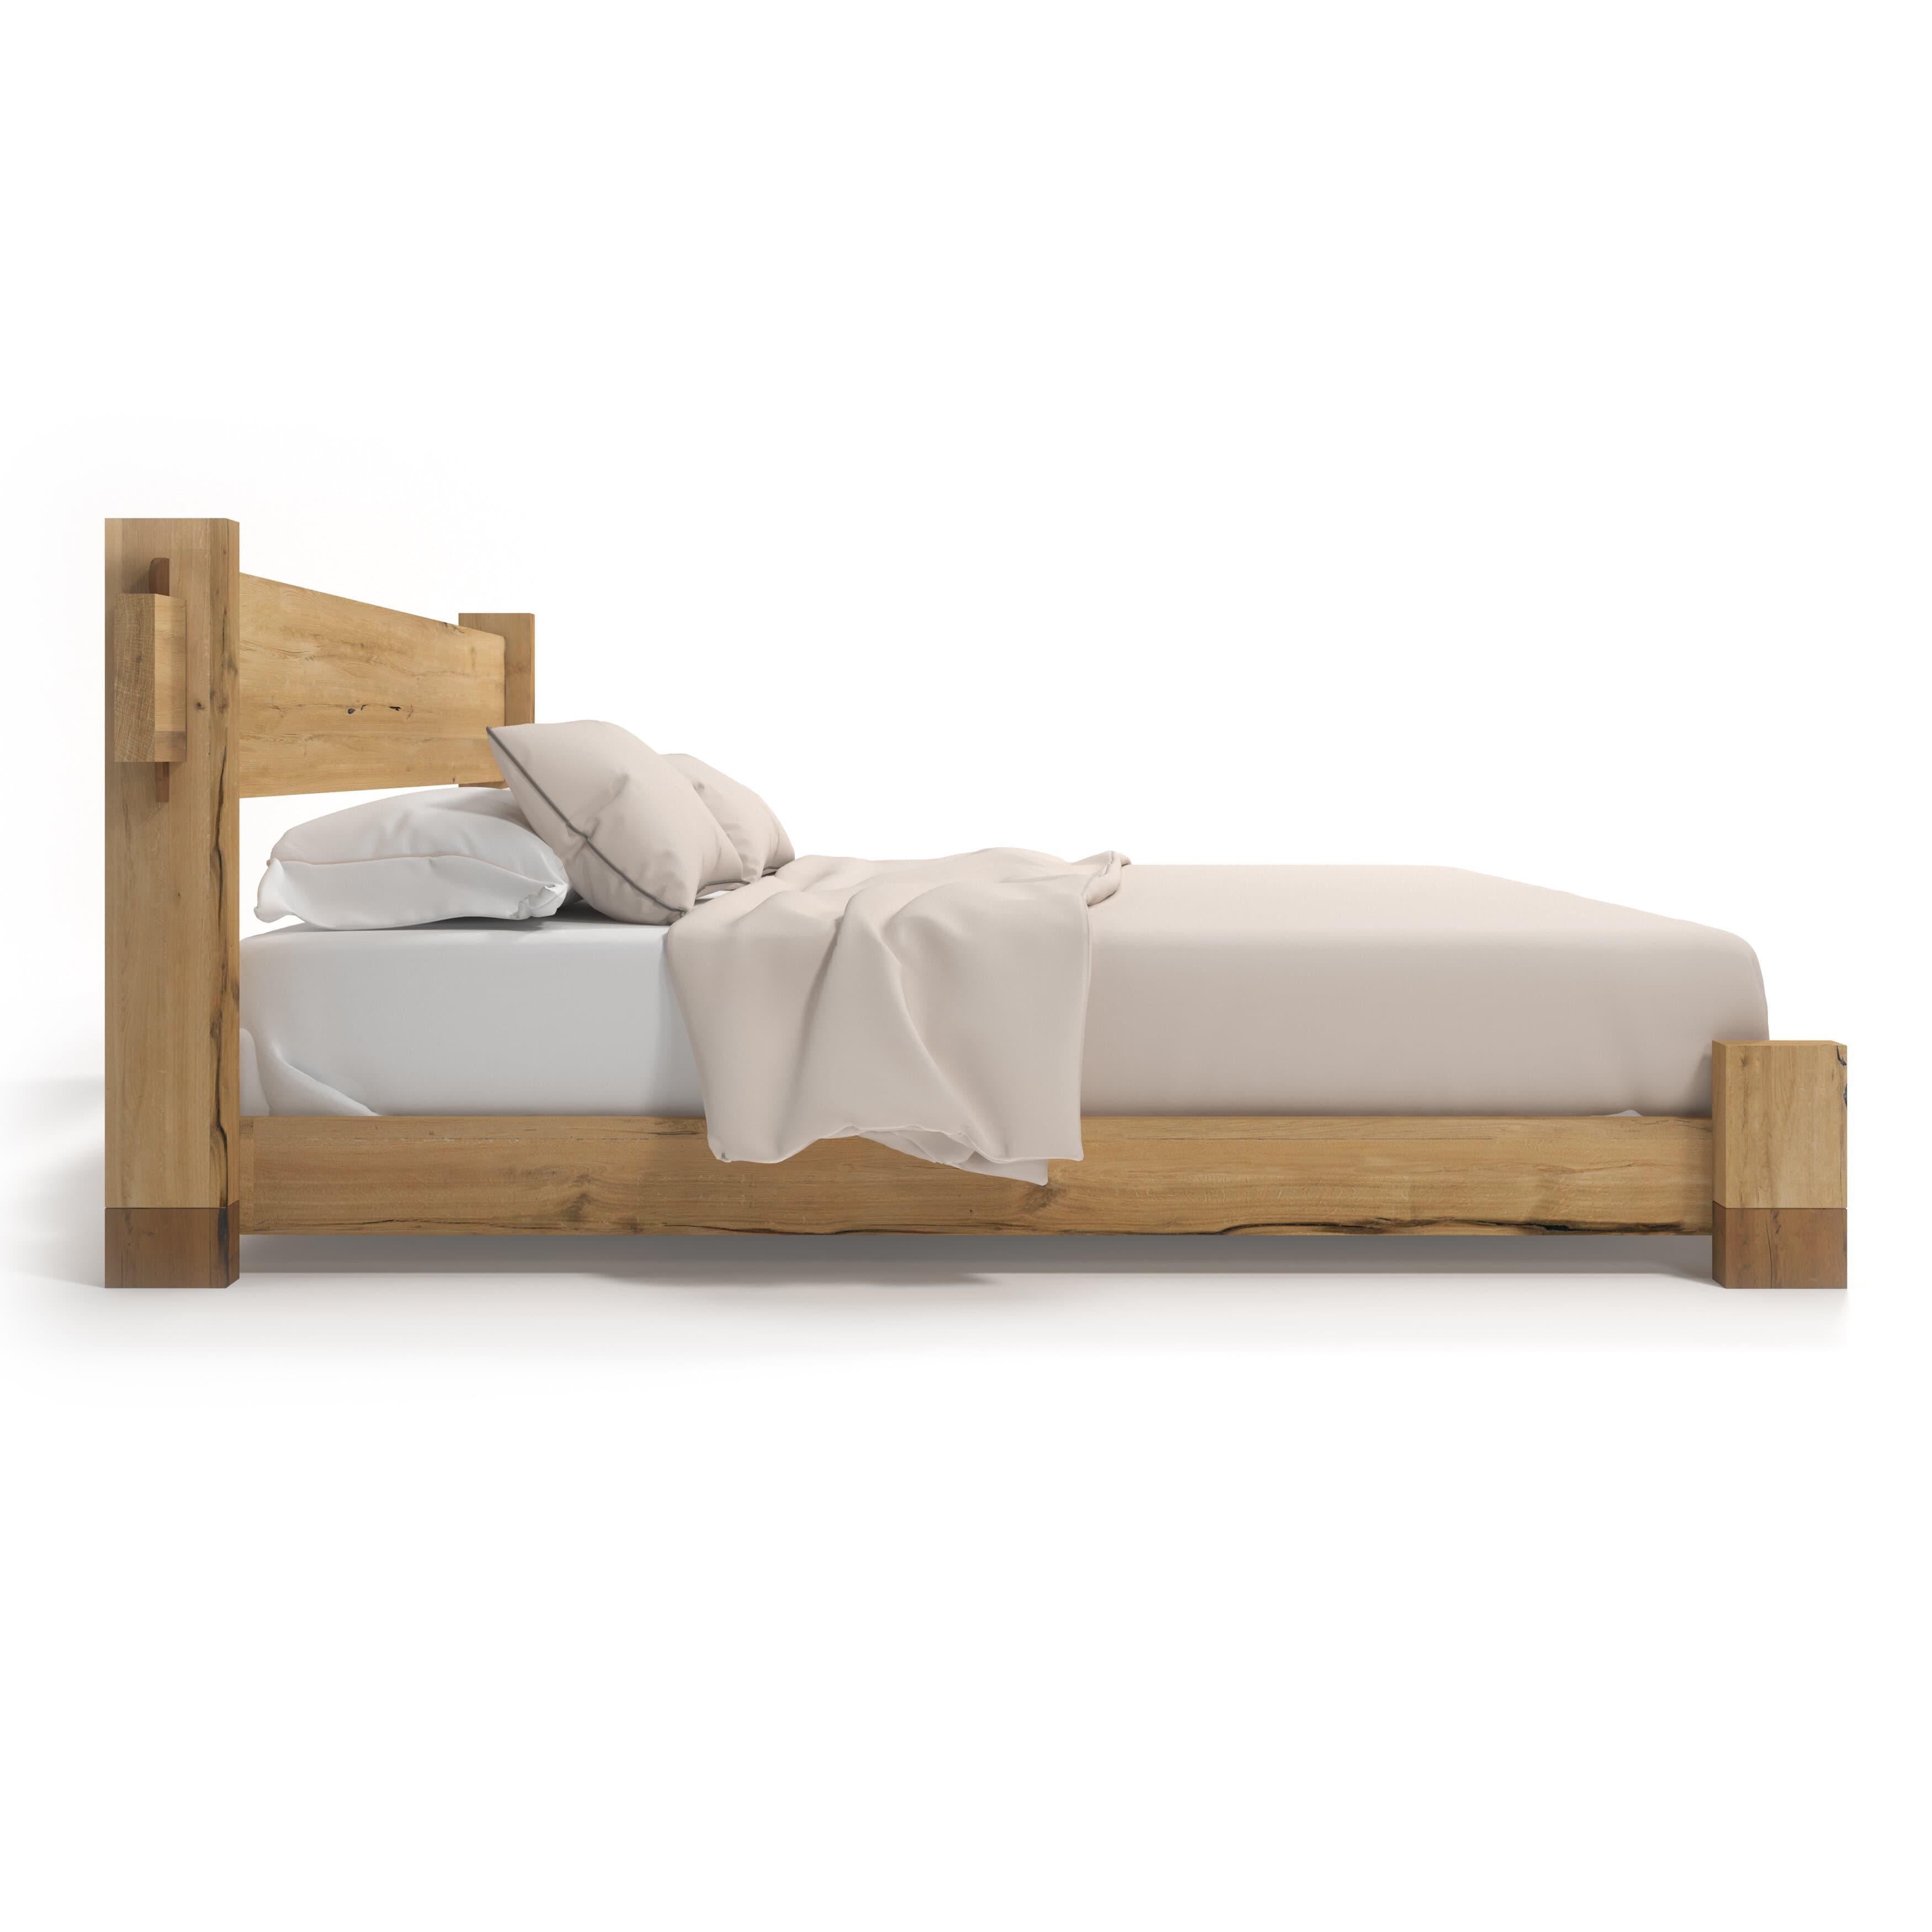 Le Dala-Bed vous permet de vous détendre en toute sérénité ! Fabriqué en bois de chêne massif durable, il garantit beauté et confort pour toutes vos nuits douillettes. 

Toutes les pièces de Tektōn sont fabriquées en bois massif naturel.
De petites